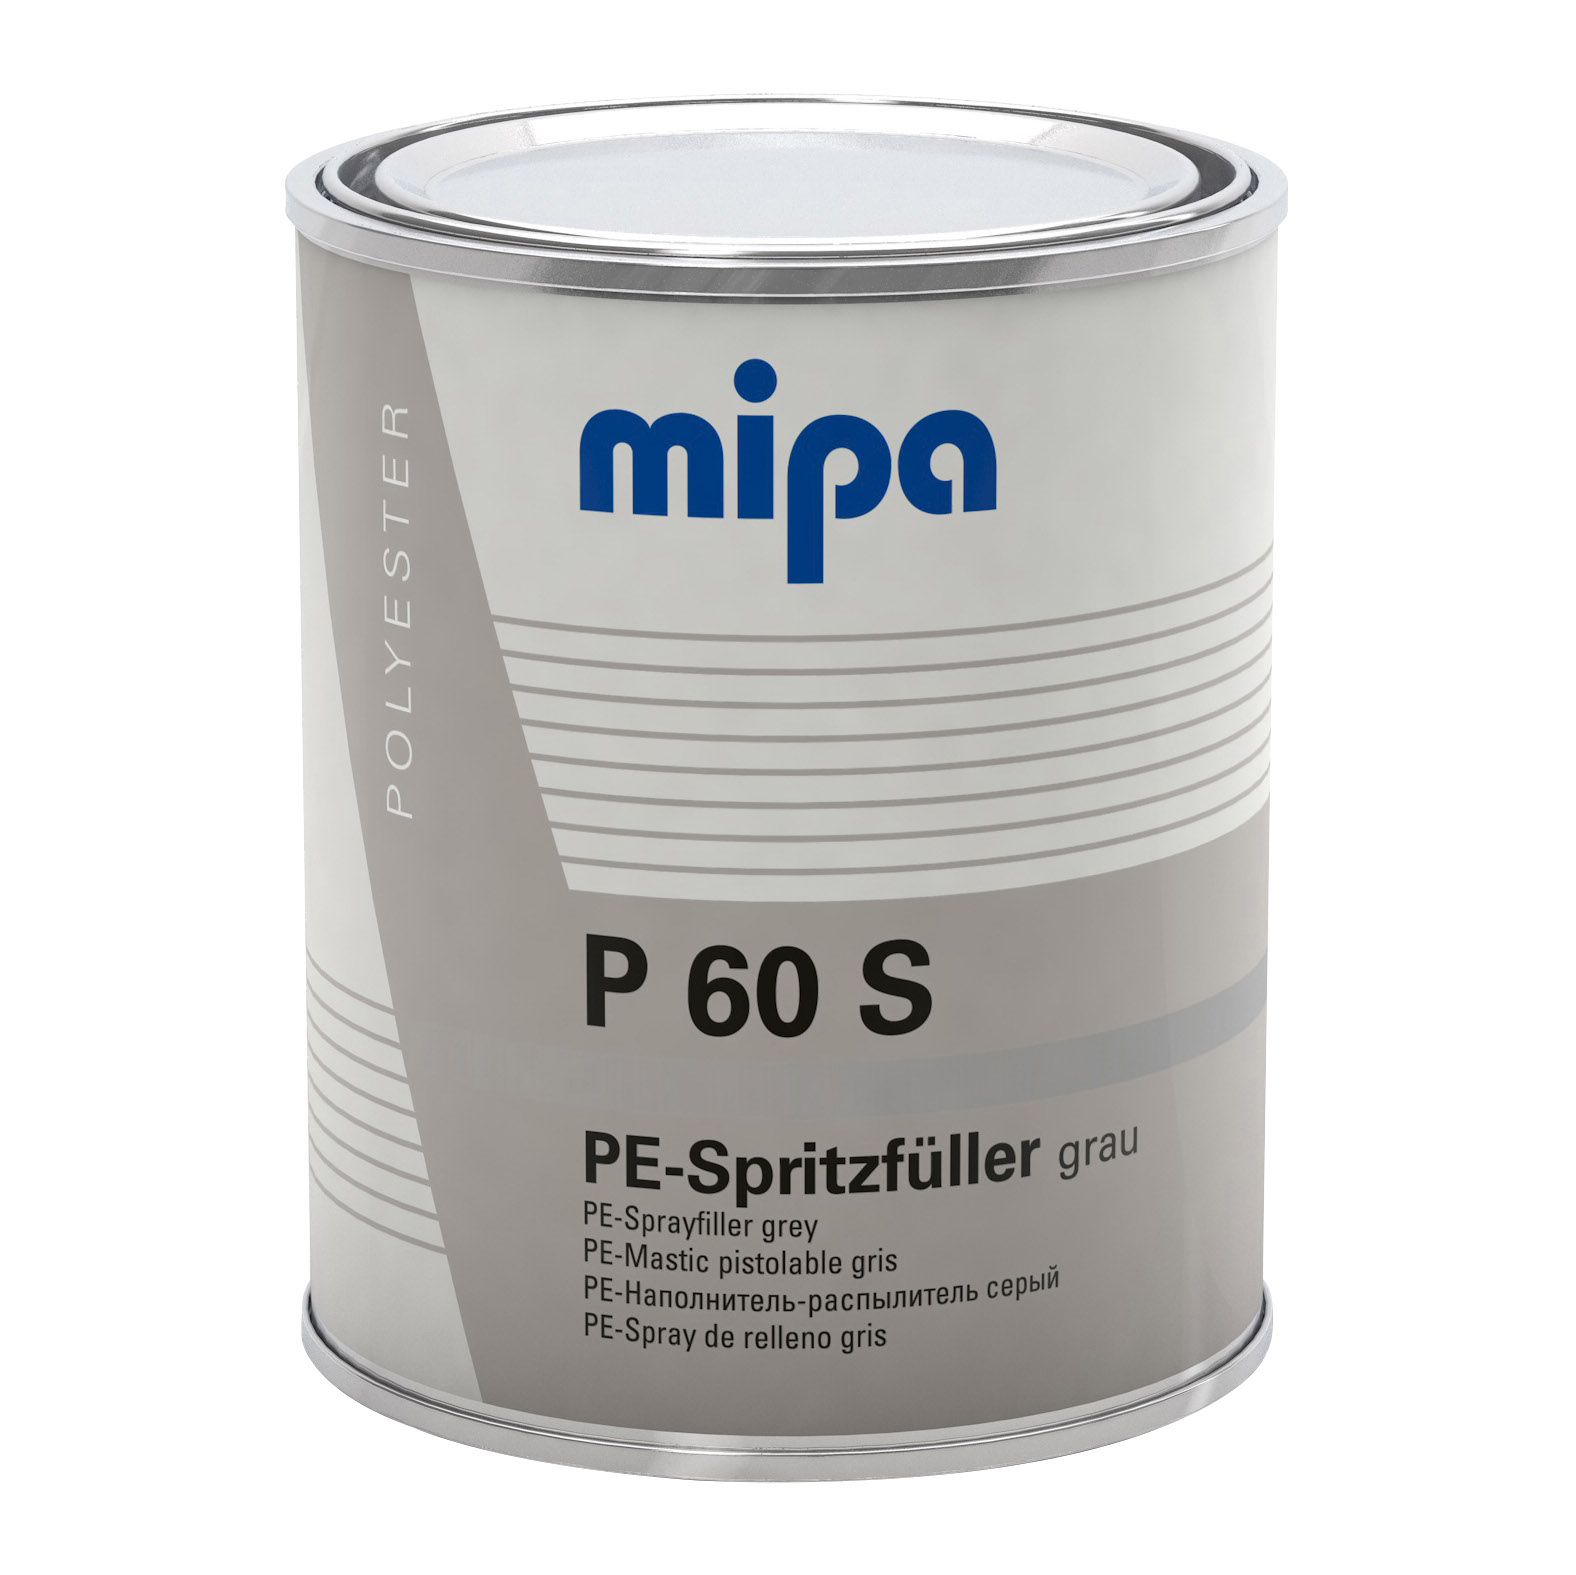 Mipa P 60 S Polyester-Dickschicht-Spritzfüller, 1 l